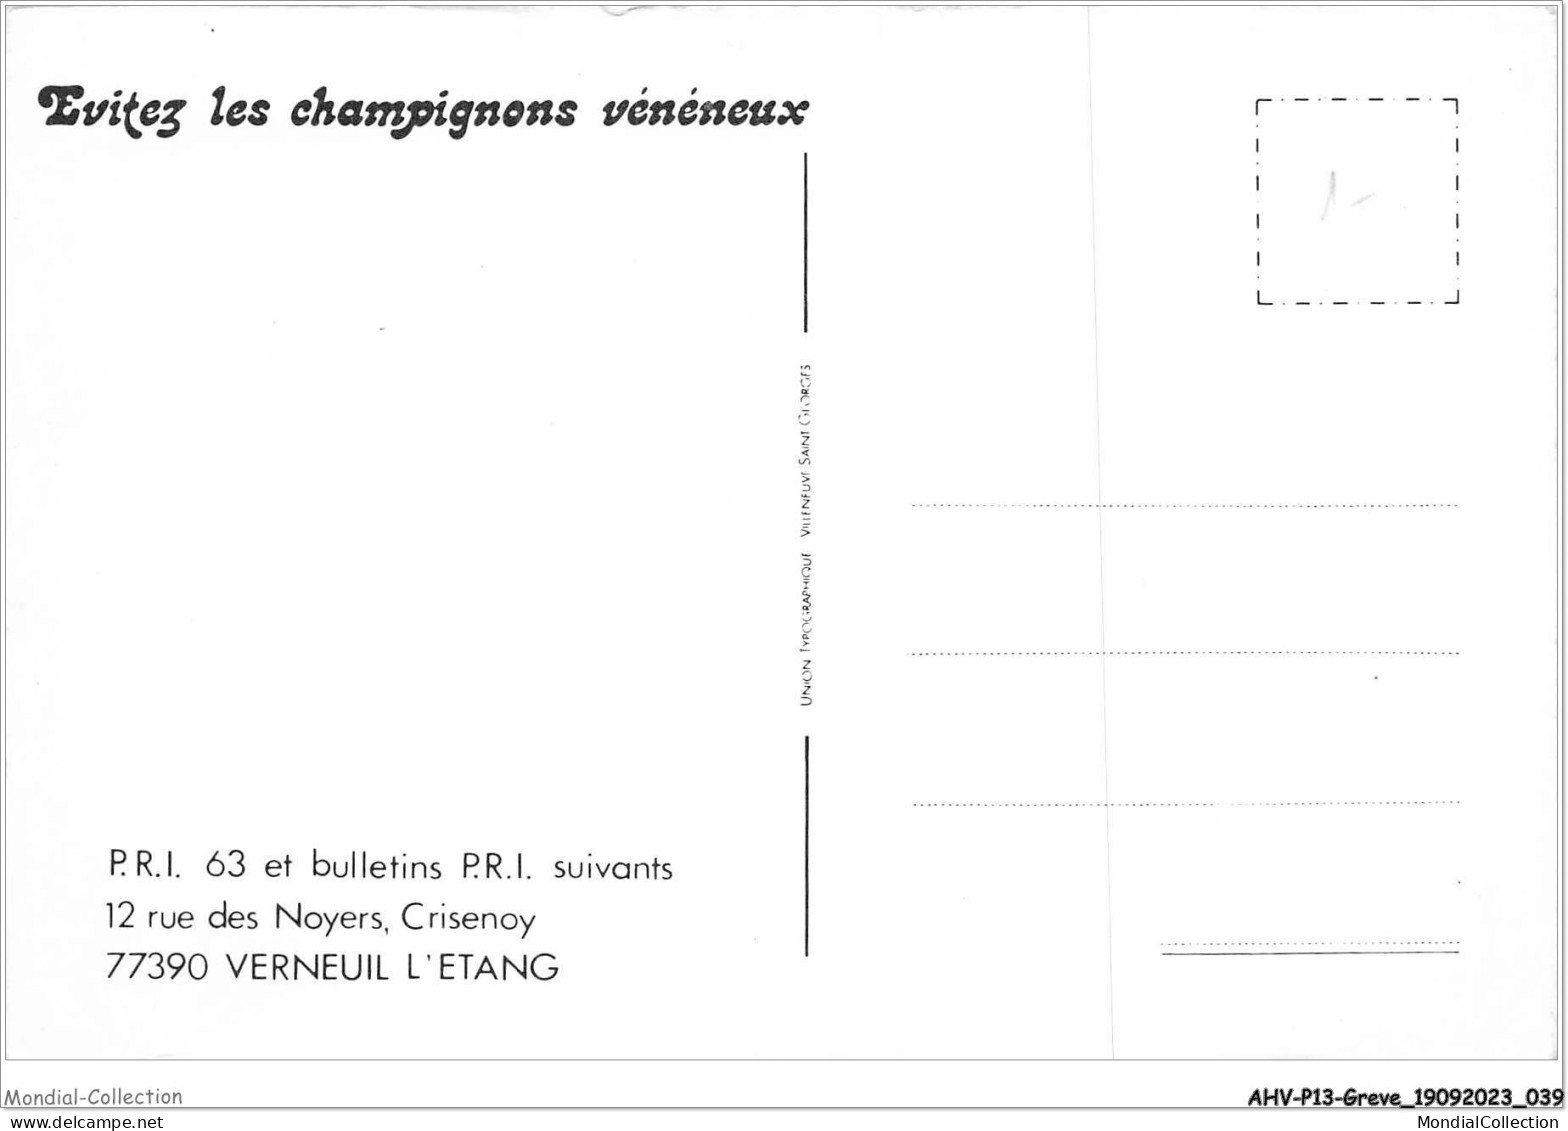 AHVP13-1133 - GREVE - Evitez Les Champignons Vénéneux  - Grèves